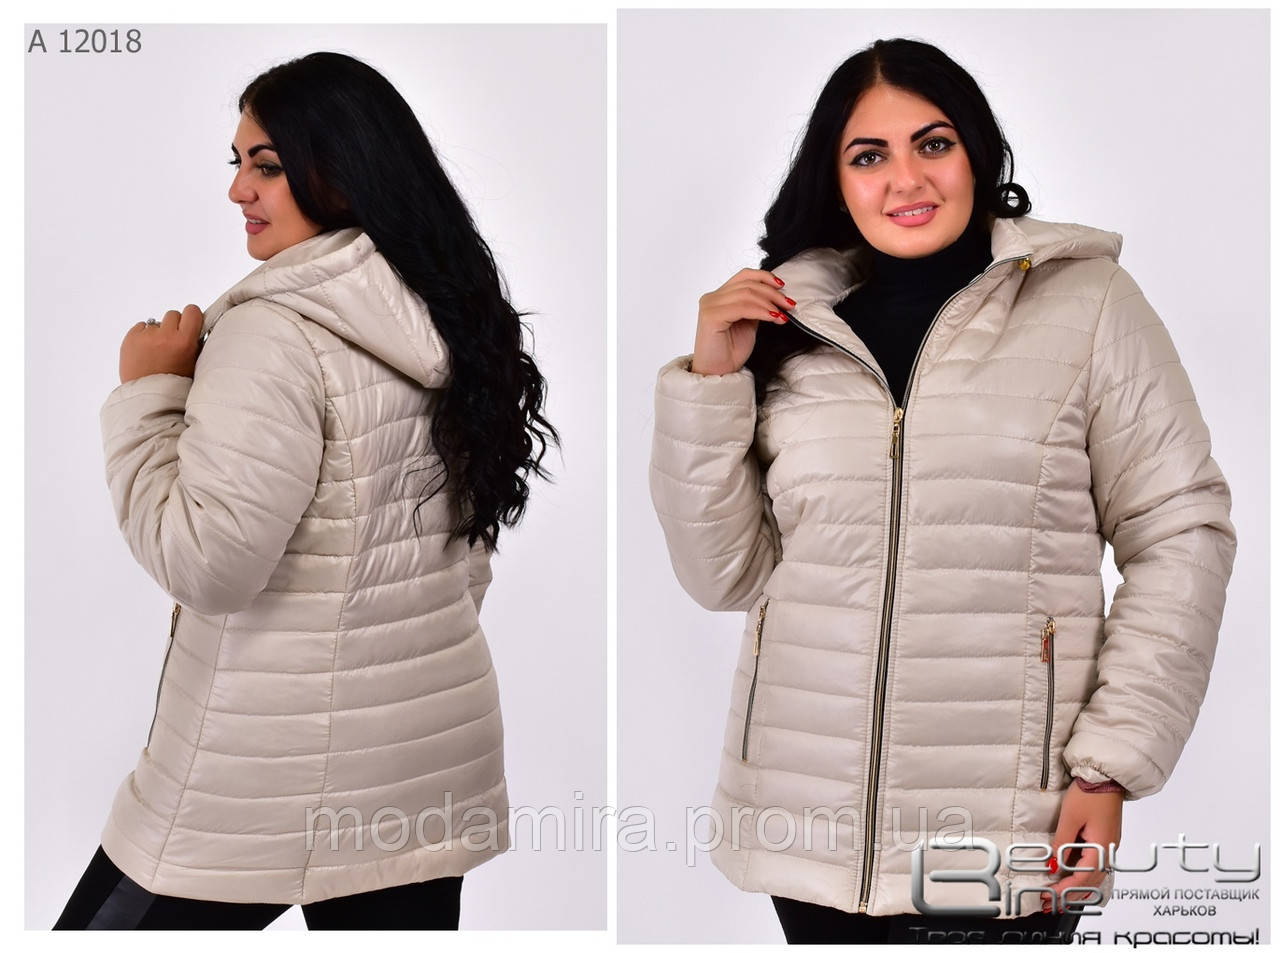 Жіноча осінка весняна курточка, молодіжна, яскрава великих розмірів. Недорого р-с 50 по 78